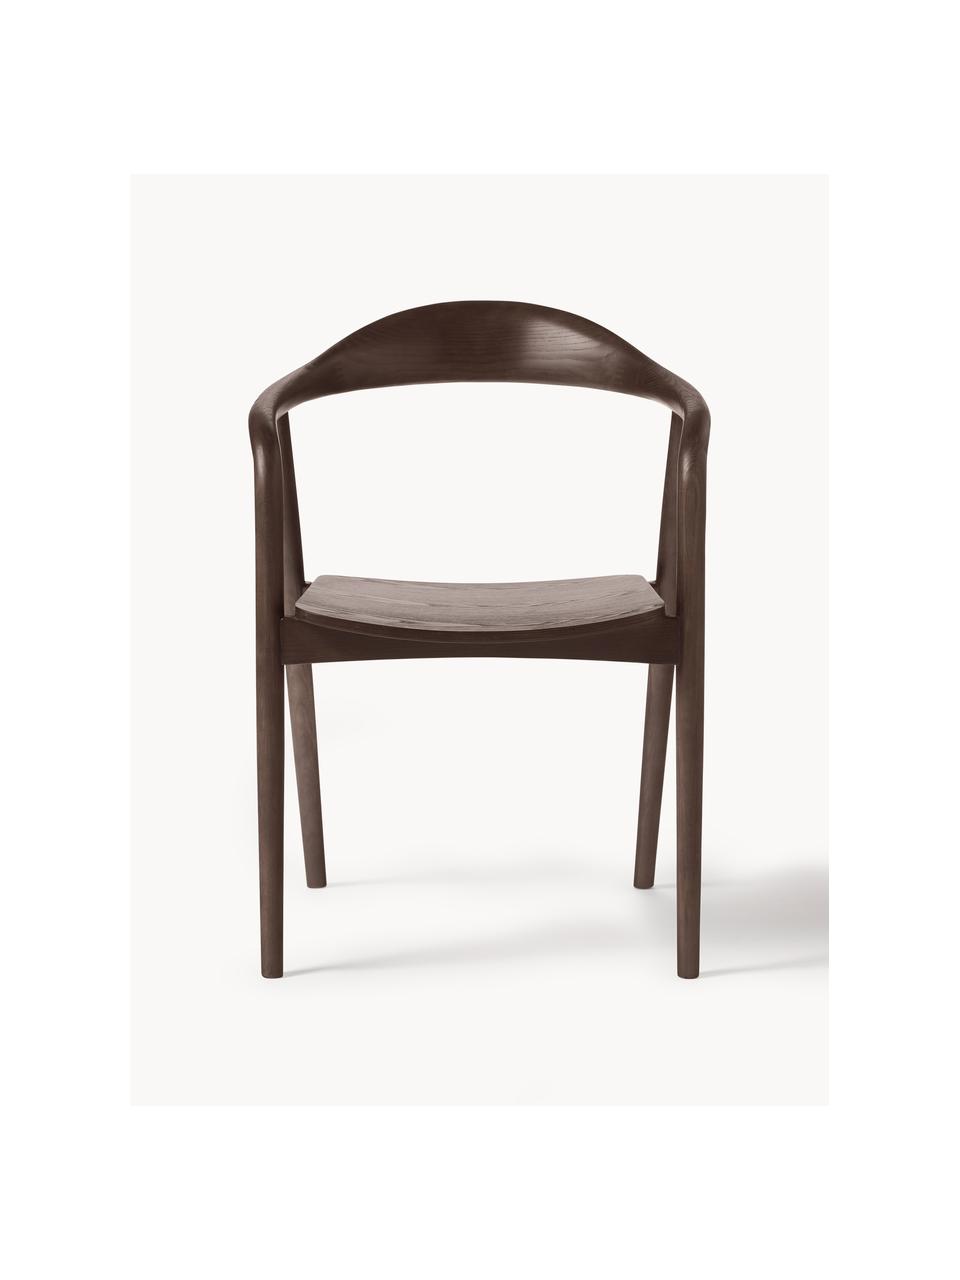 Drevená stolička s opierkami Angelina, Jaseňové drevo lakované, preglejka lakovaná

Tento produkt je vyrobený z trvalo udržateľného dreva s certifikátom FSC®., Tmavé jaseňové drevo, Š 57 x V 80 cm